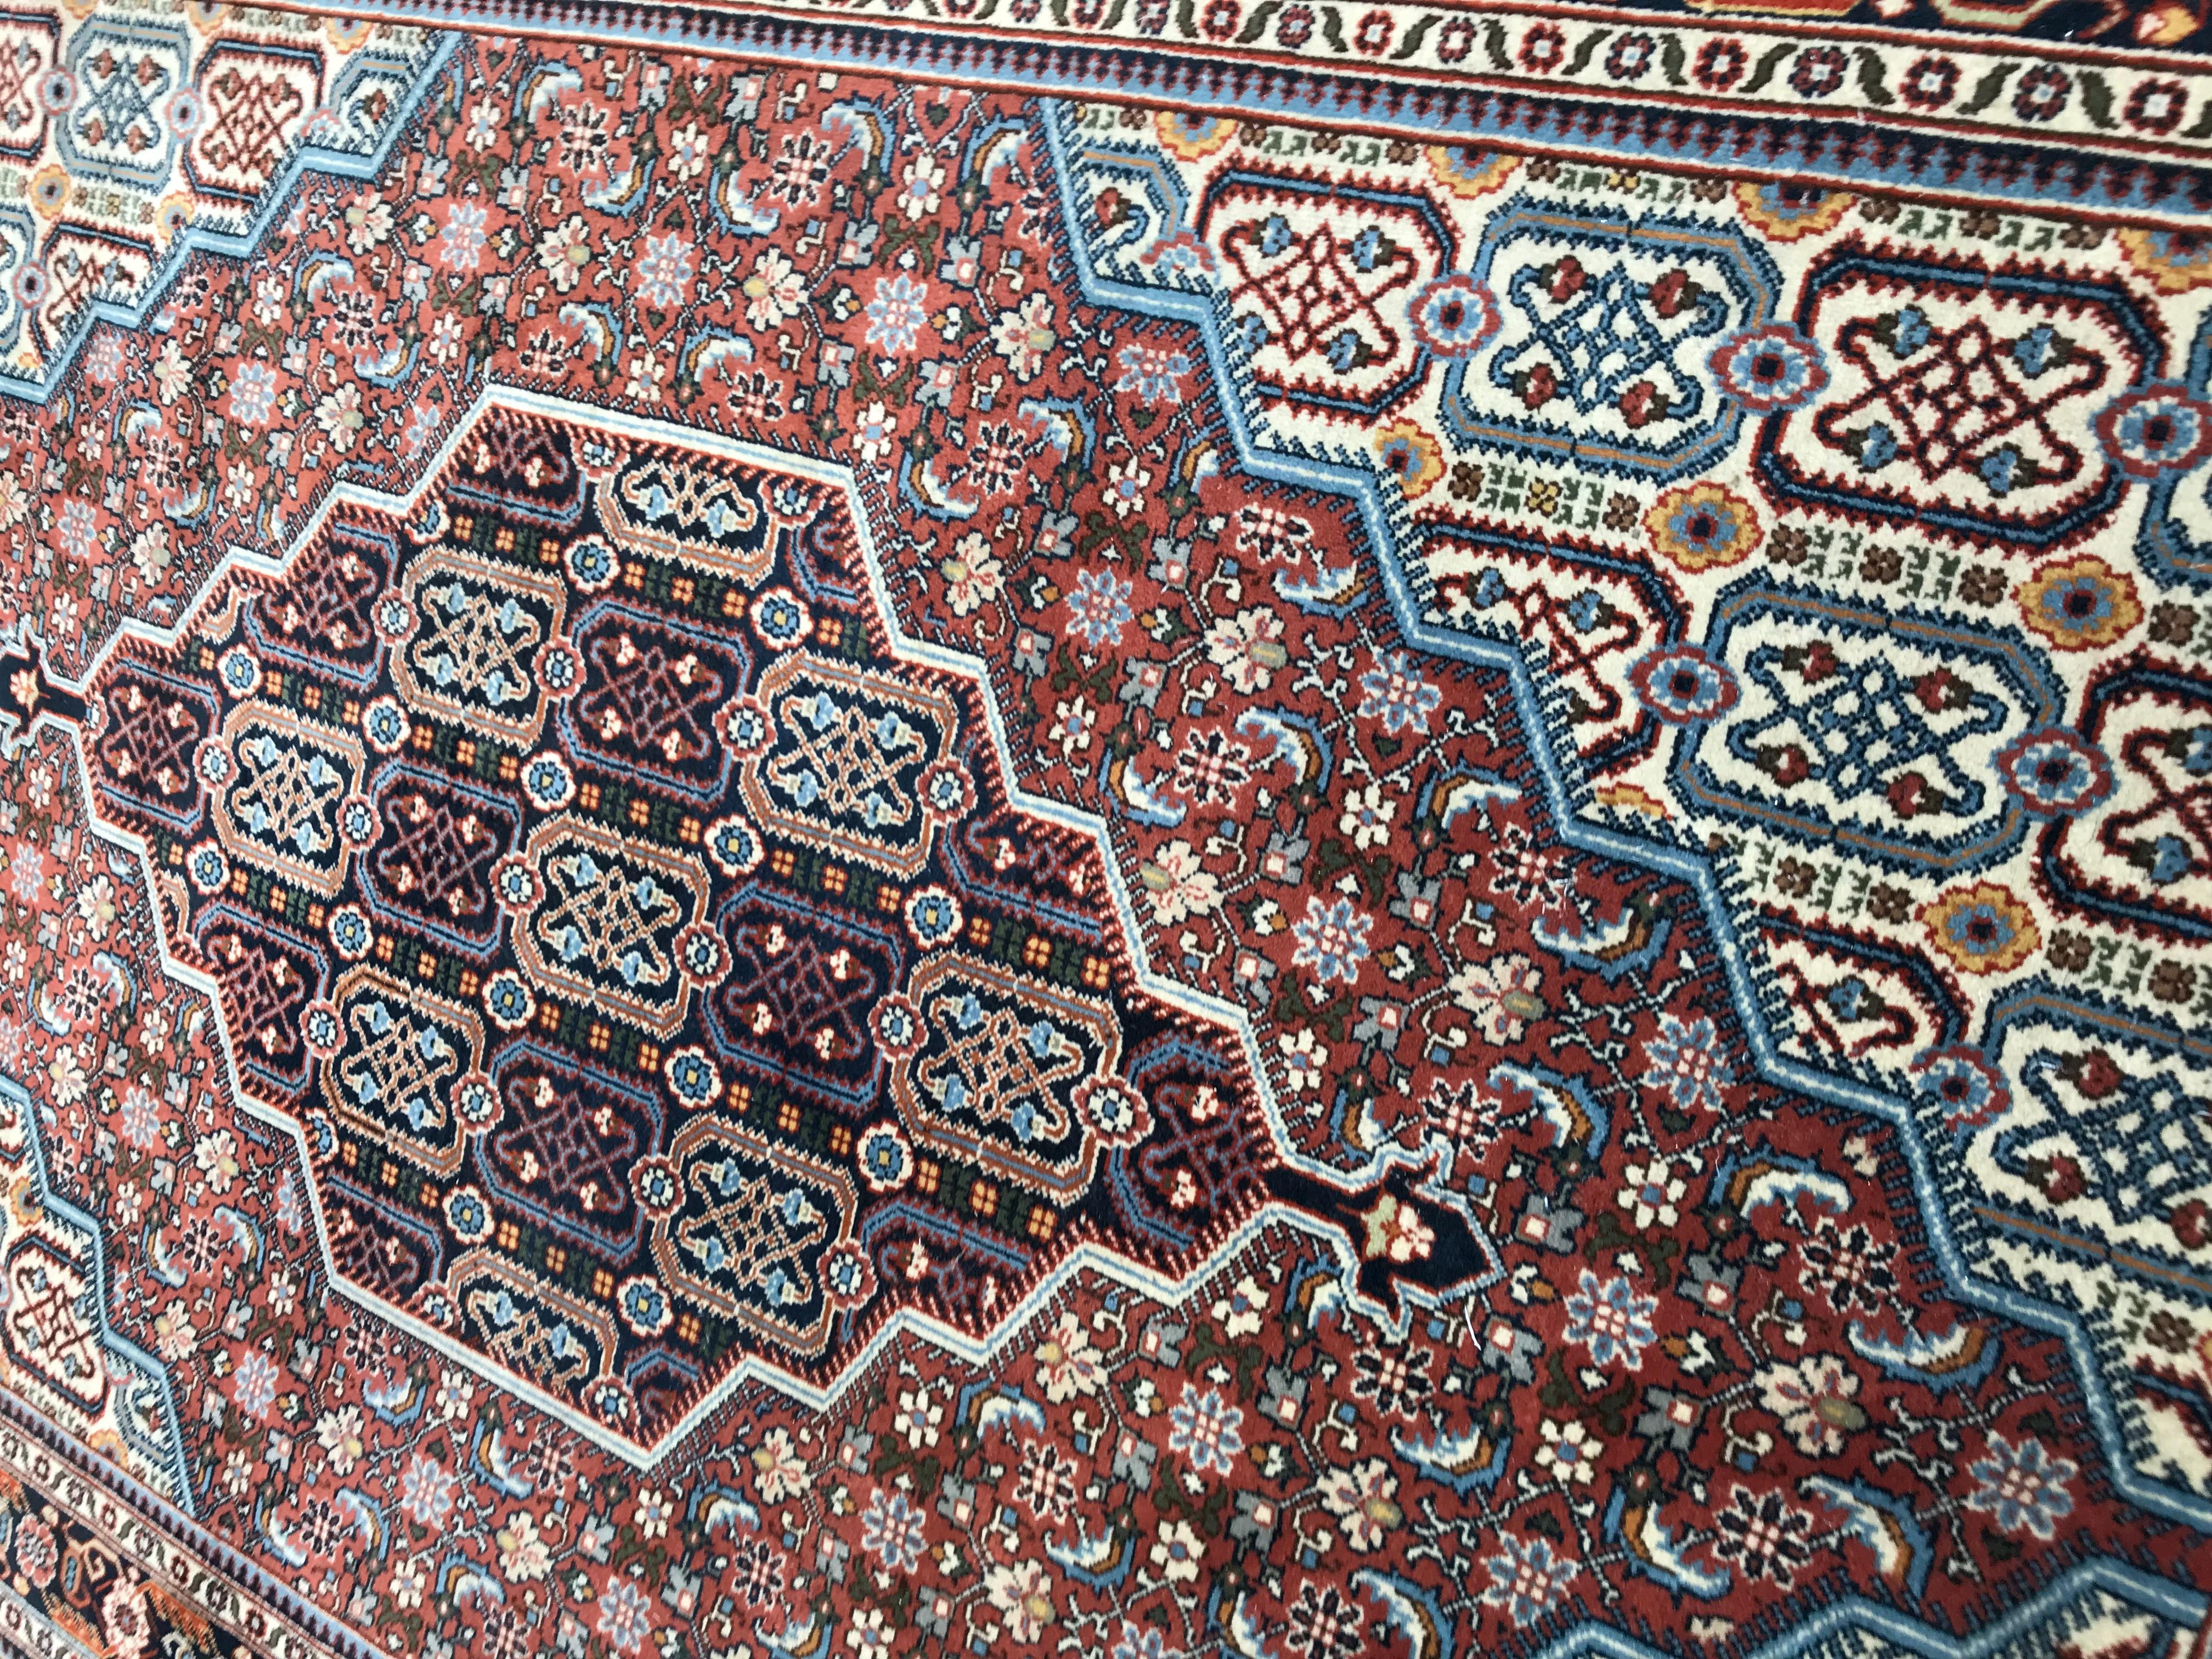 Entdecken Sie die zeitlose Eleganz dieses schönen transsilvanischen Teppichs aus der Mitte des 20. Jahrhunderts. Der mit Präzision handgeknüpfte Wollsamt auf Baumwollbasis sorgt für ein luxuriöses Gefühl. Das lebendige Design zeigt stilisierte